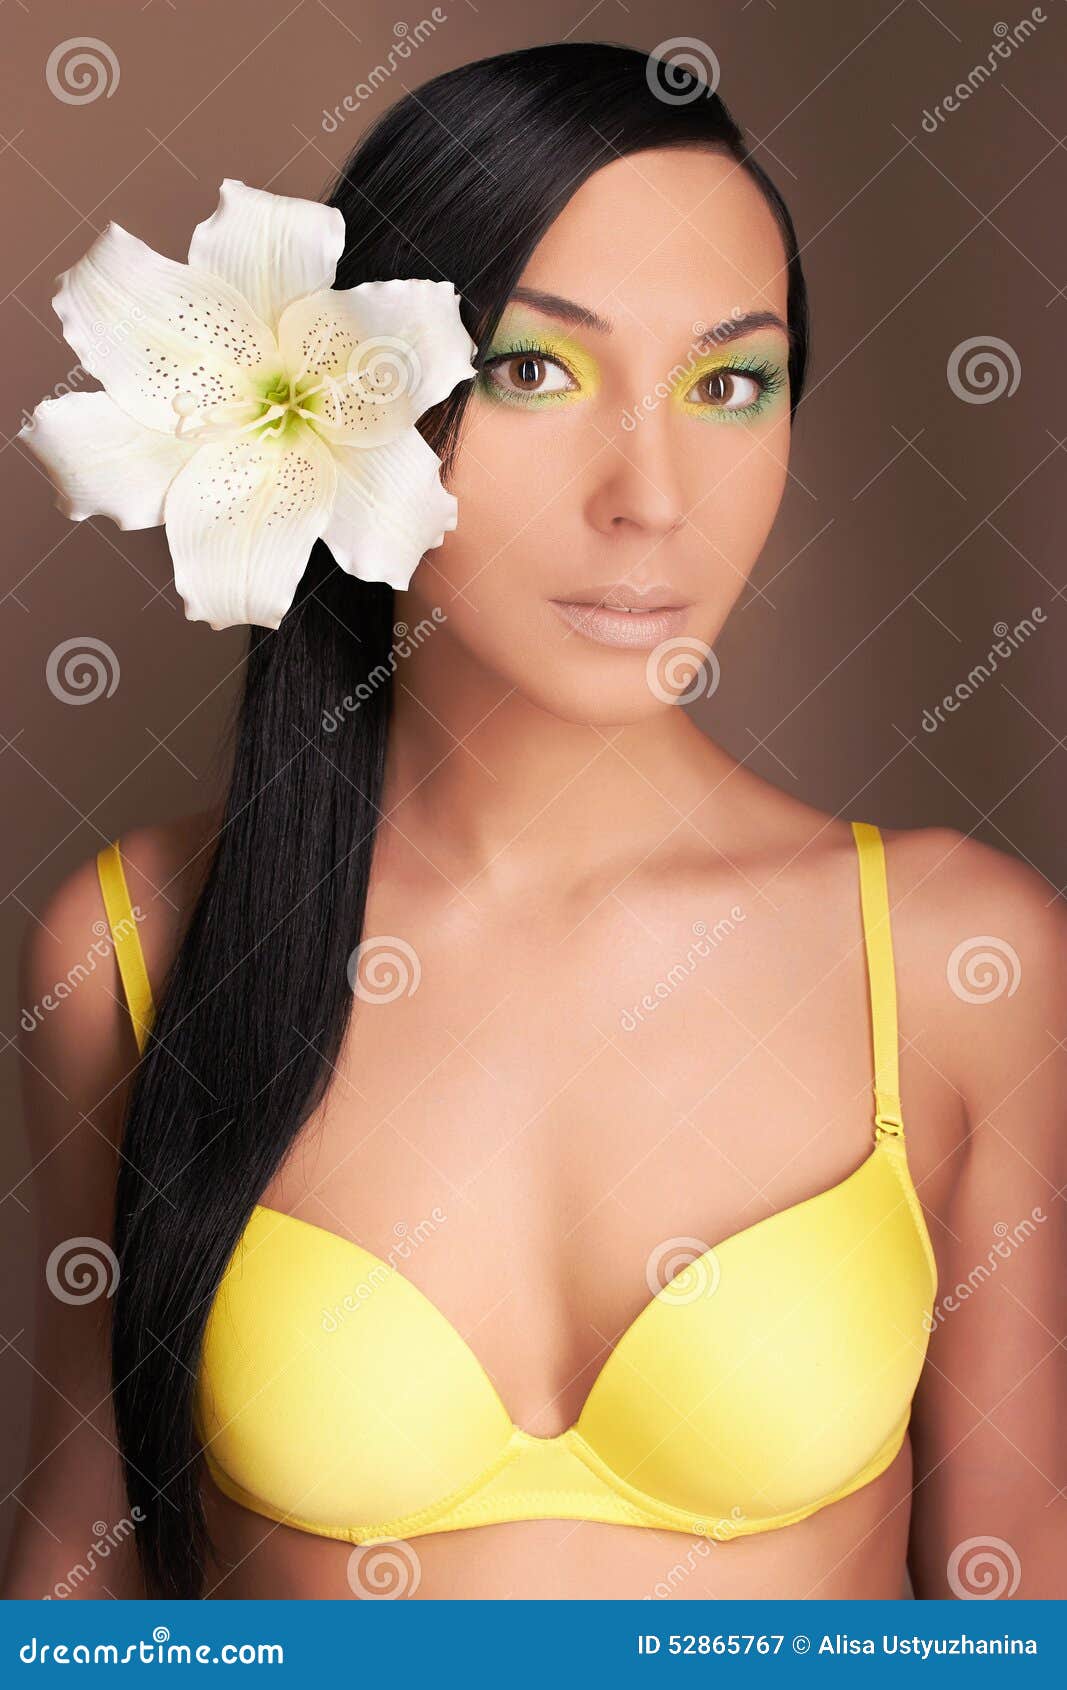 Hawaiian Woman With Xy Girl In Bikini Stock Image Image Of Coloring Color 52865767